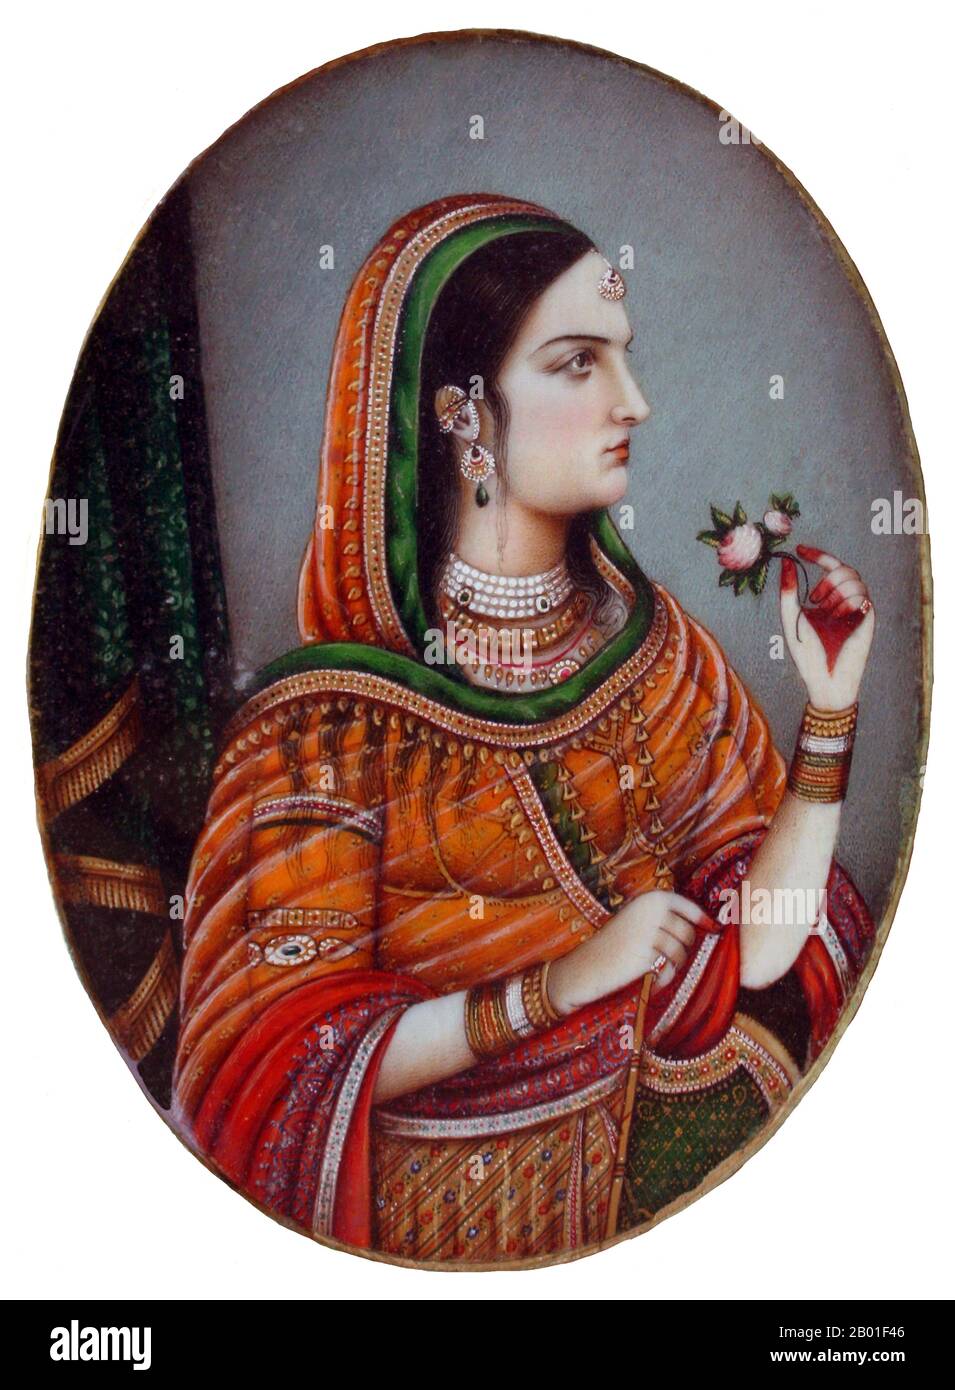 India: L'imperatrice Nur Jahan, moglie dell'imperatore Jahangir. Pittura di acquerello in miniatura, Delhi, c. 1840. Begum Nur Jahan (l'ortografia alternativa Noor Jahan, Nur Jehan, Nor Jahan), conosciuto anche come Mehr-un-Nisaa, è stato un'imperatrice della dinastia Mughal che governava gran parte del subcontinente indiano. Begum Nur Jahan era la ventesima moglie preferita dell'imperatore Mughal Jahangir, che era il suo secondo marito - e l'imperatrice più famosa dell'Impero Mughal. La storia dell'infatuazione della coppia l'una per l'altra e del rapporto che ha rispettato fra loro è il roba di molte leggende (spesso apocrifali). Foto Stock